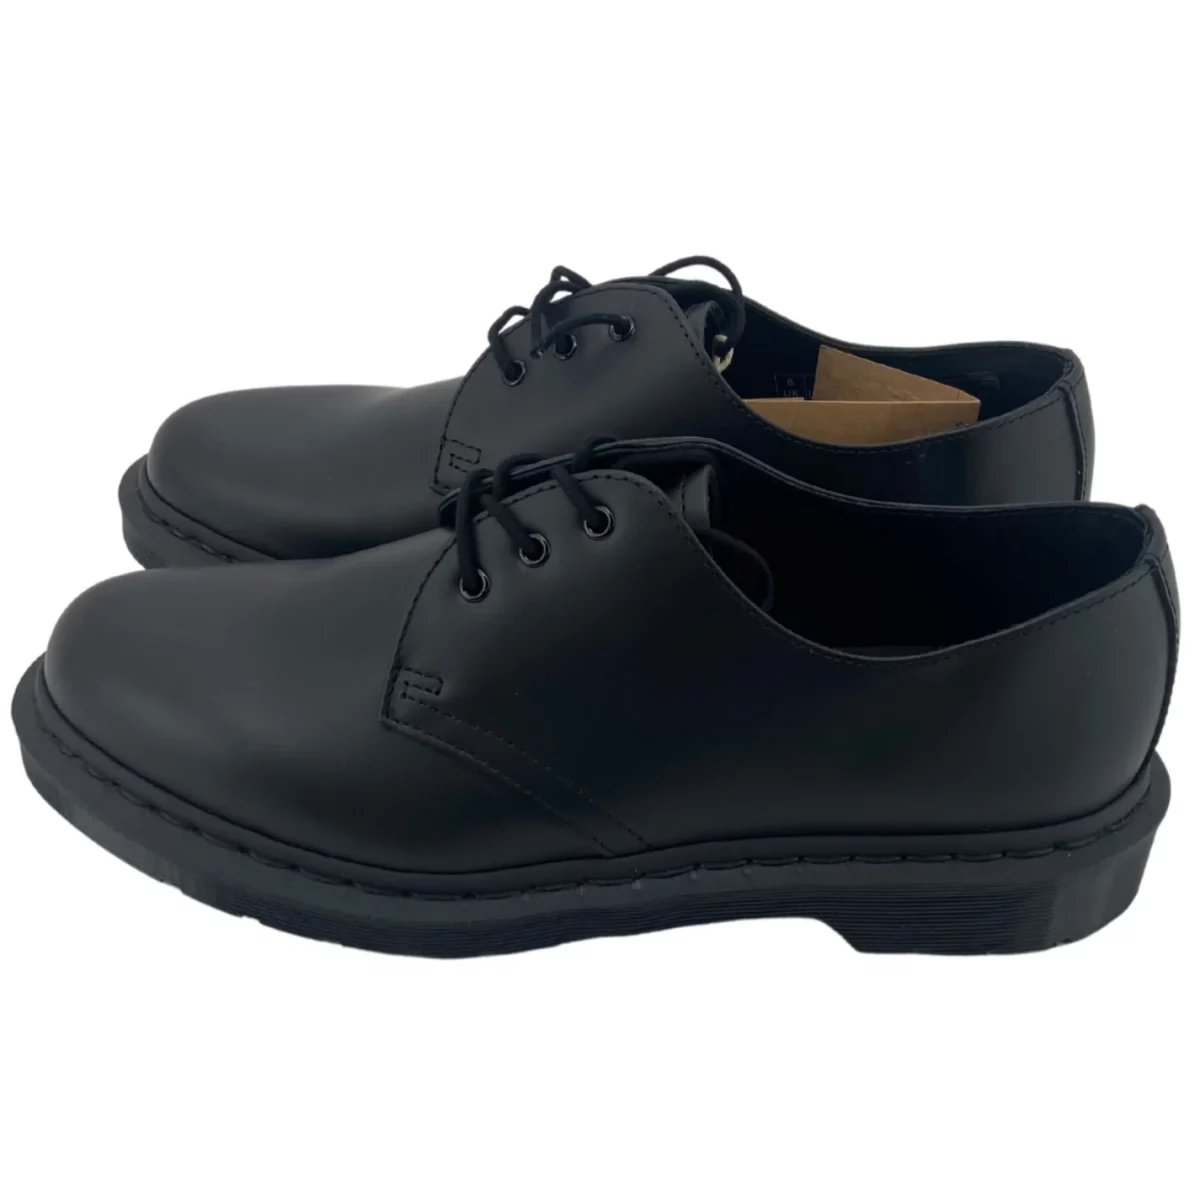 Dr.Martens :Men's Dress shoe / Black / Smooth / Heritage Fit / Size 8